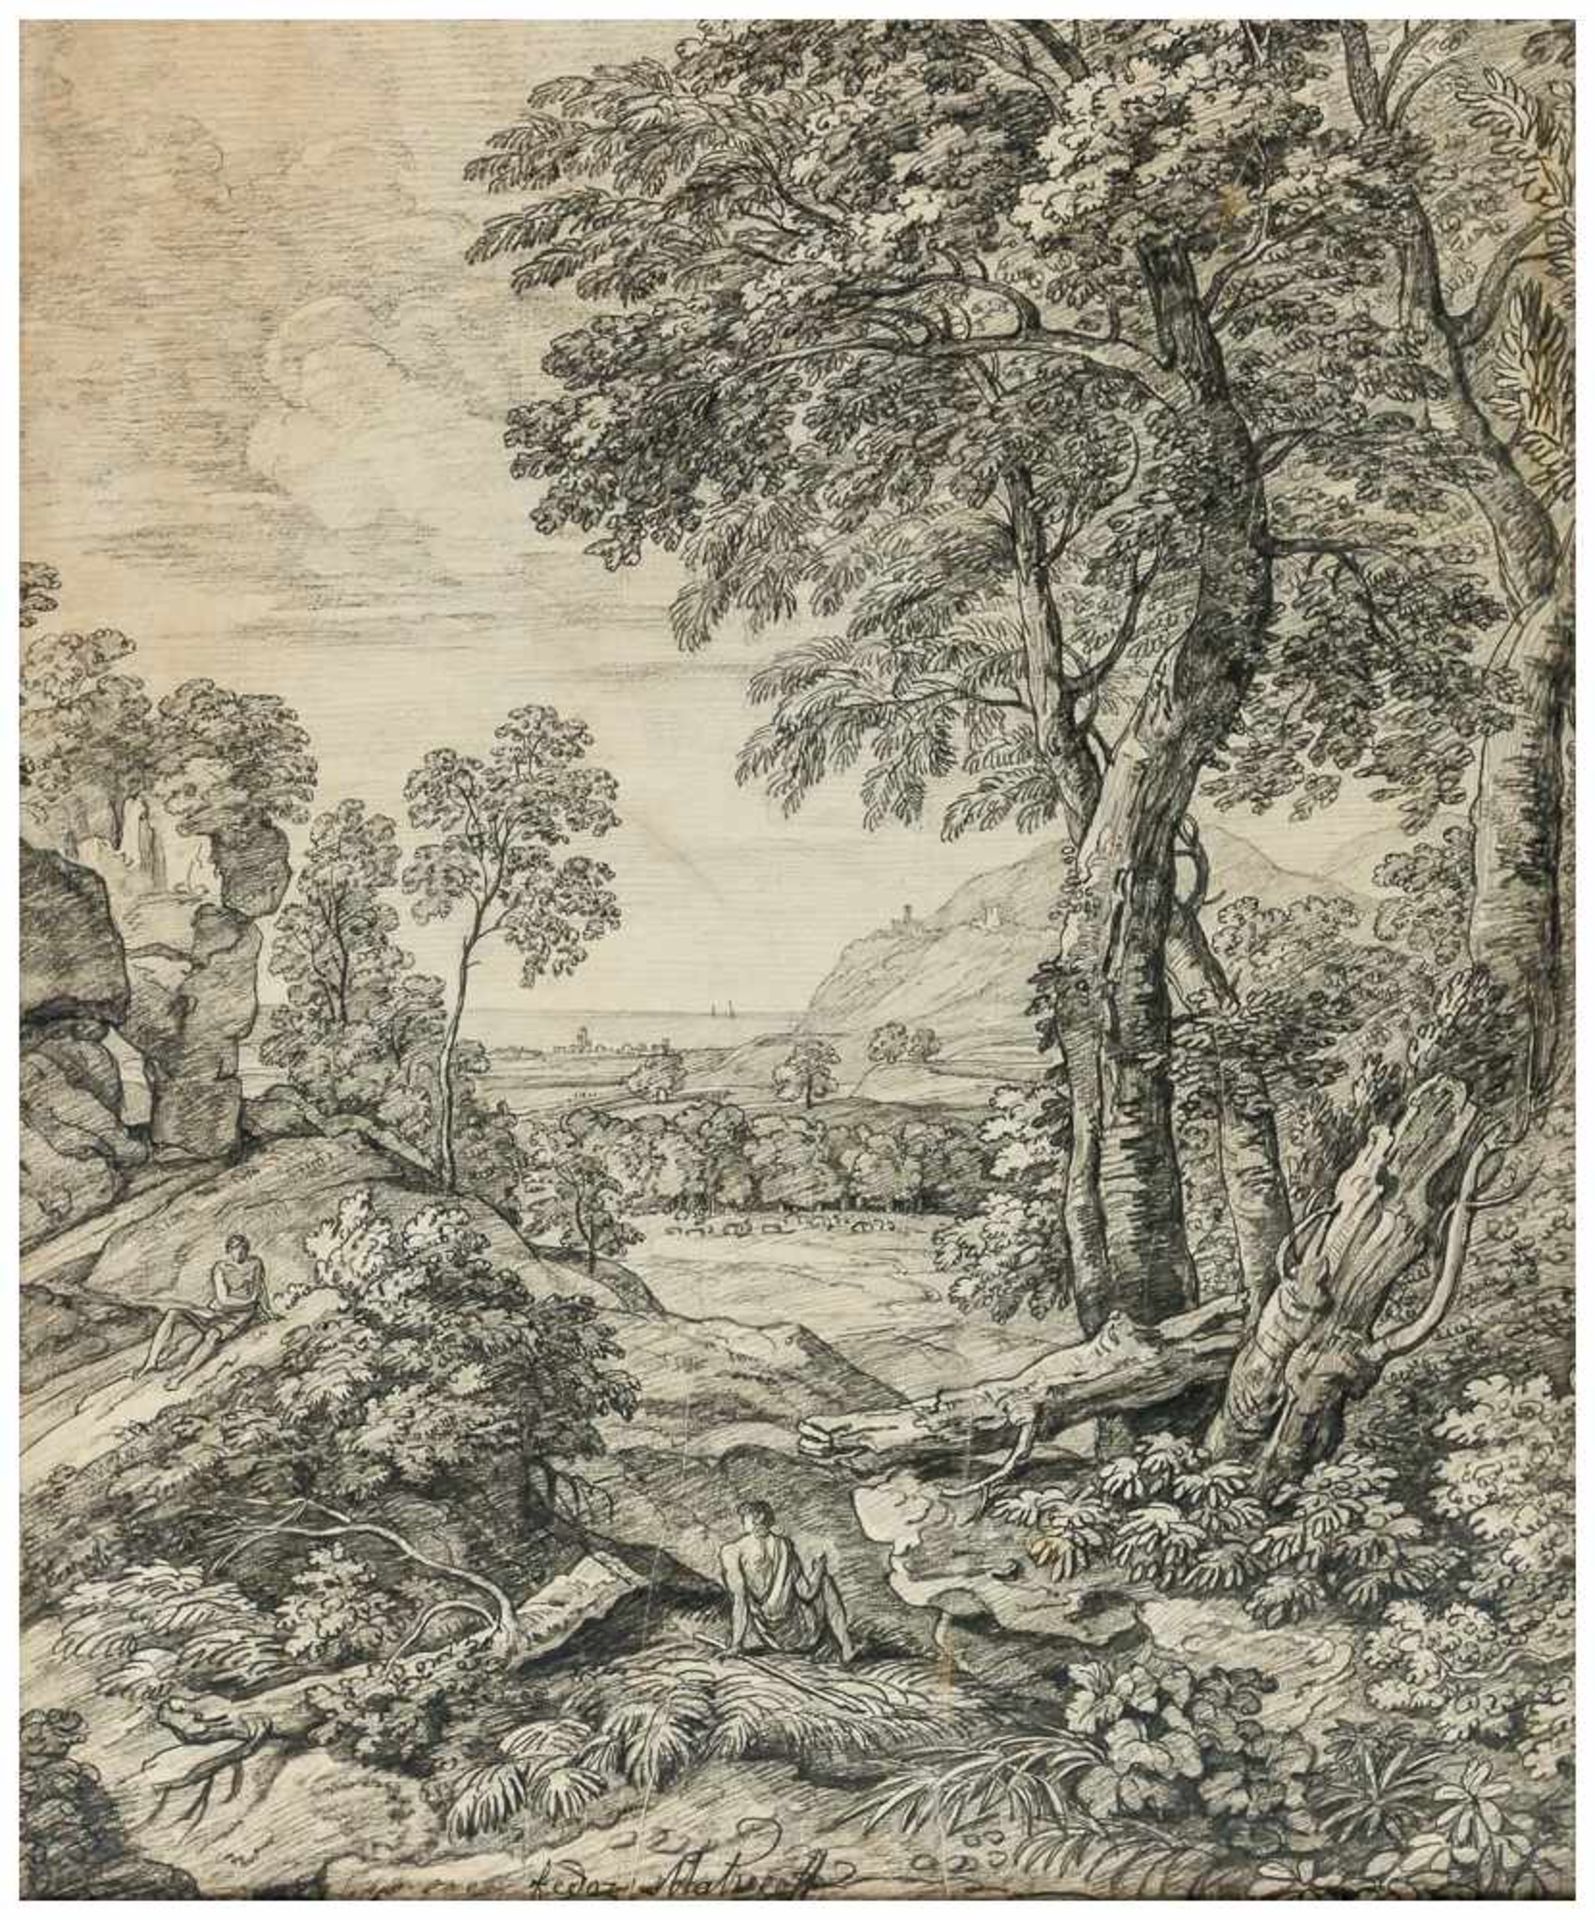 Landschaft Bleistift-Zeichnung von Fedor Matveeff (1758 - 1826) Bildgrösse: ca. 67 x 52 cm,